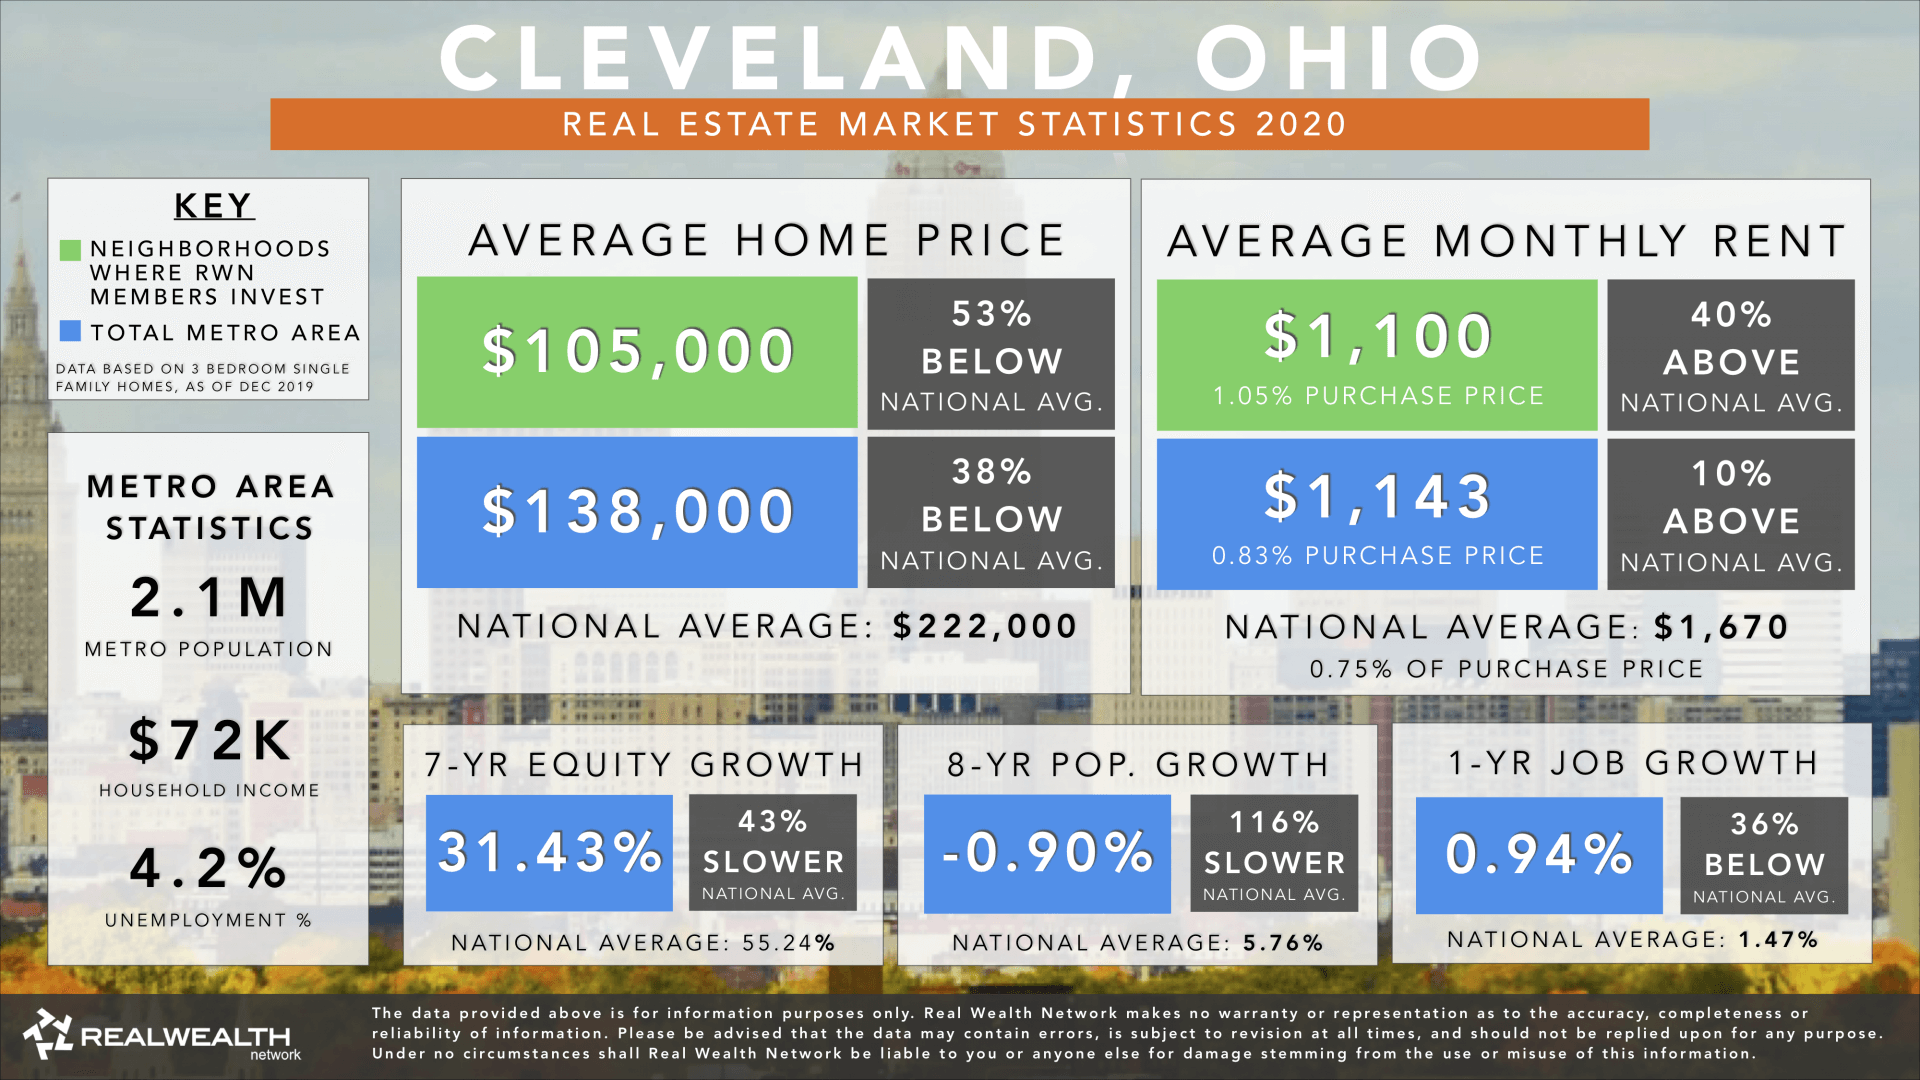 Cleveland Real Estate Market Trends & Statistics 2020